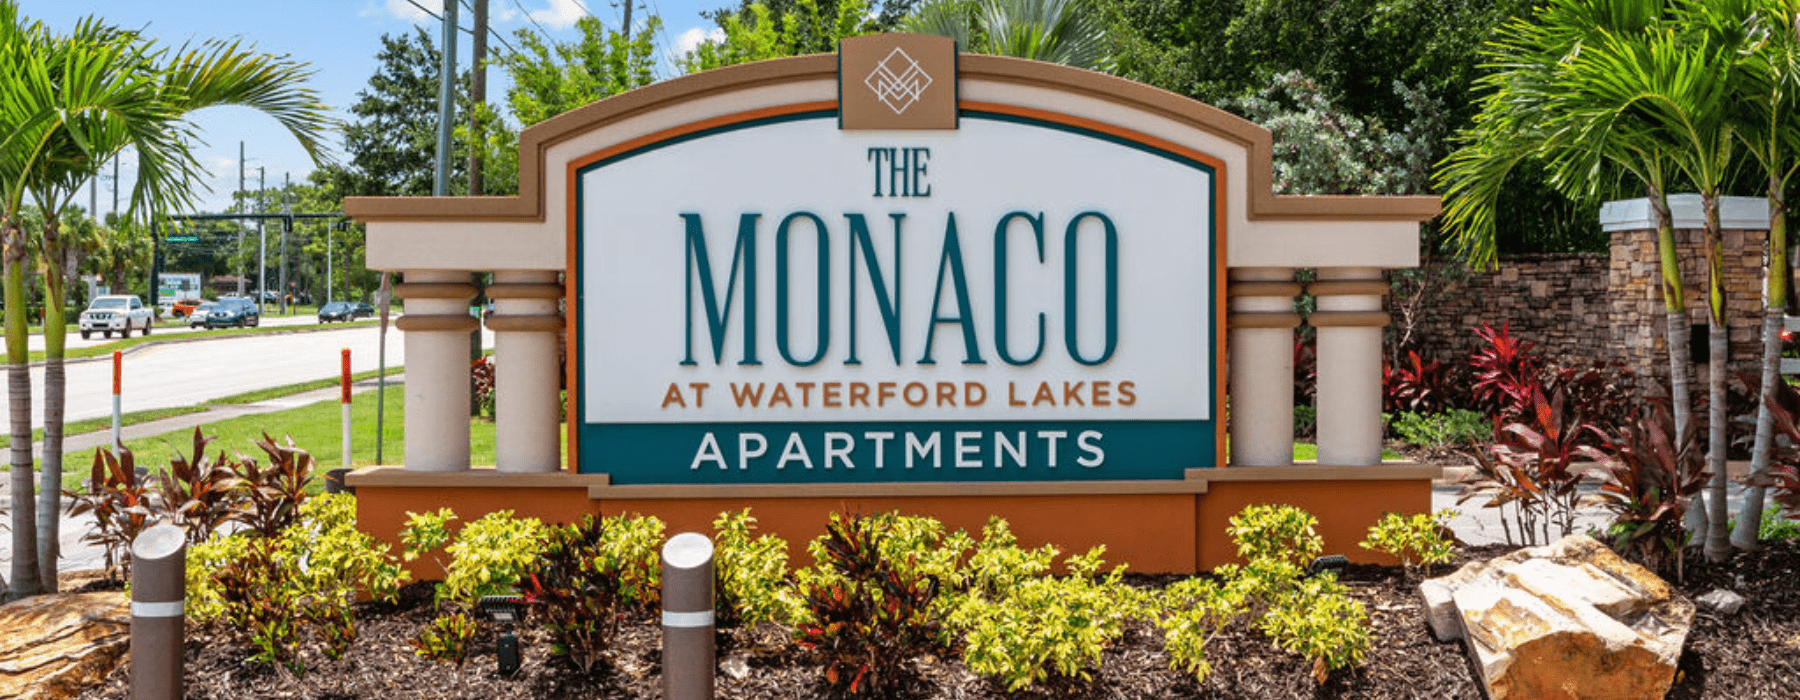 The Monaco at Waterford Lakes Apartments Orlando Florida